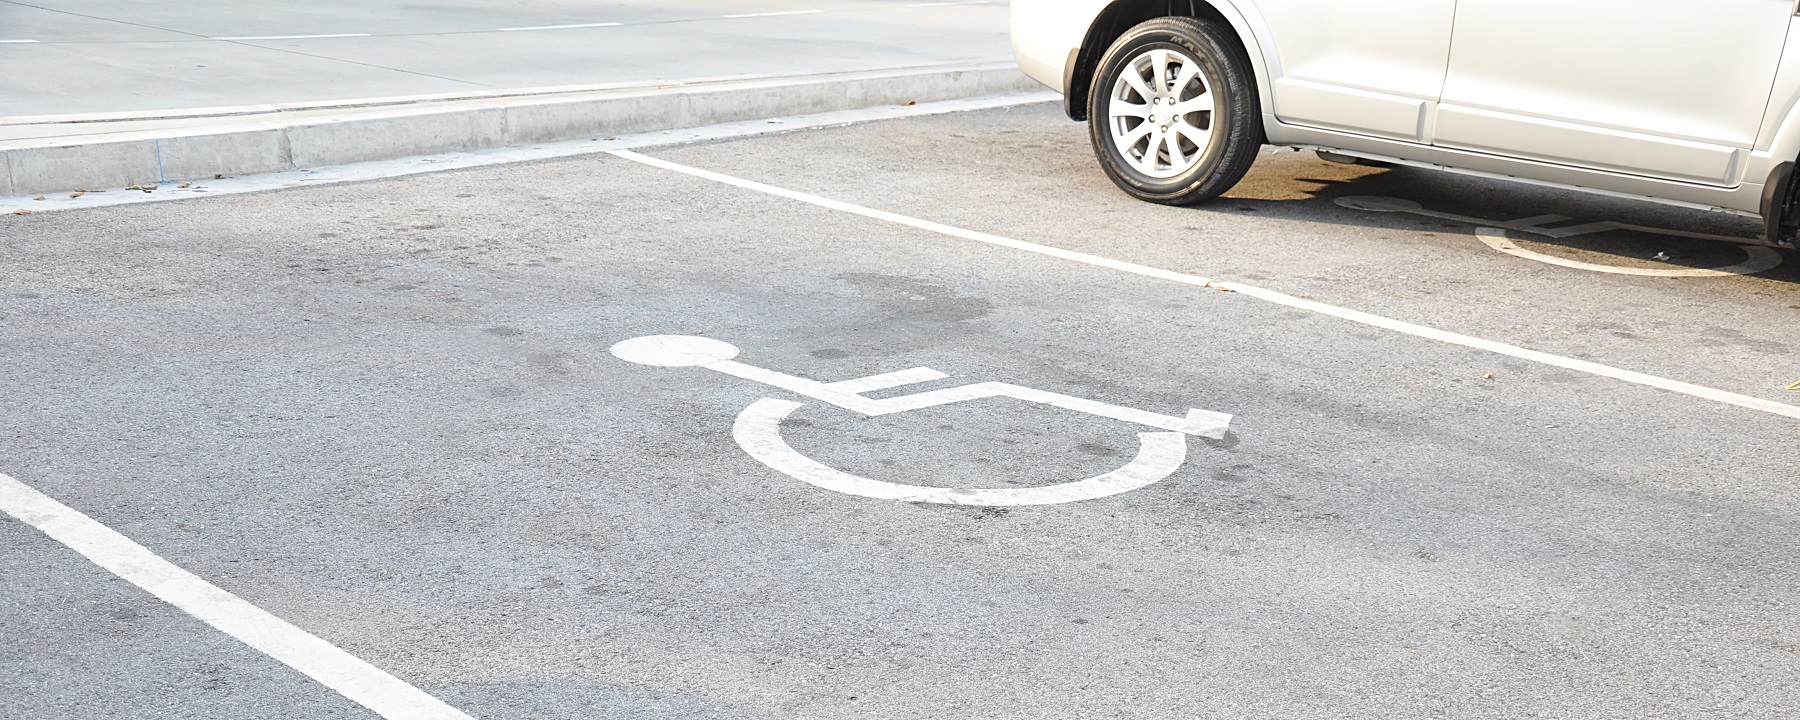 Места для инвалидов: кто может парковать свои автомобили?